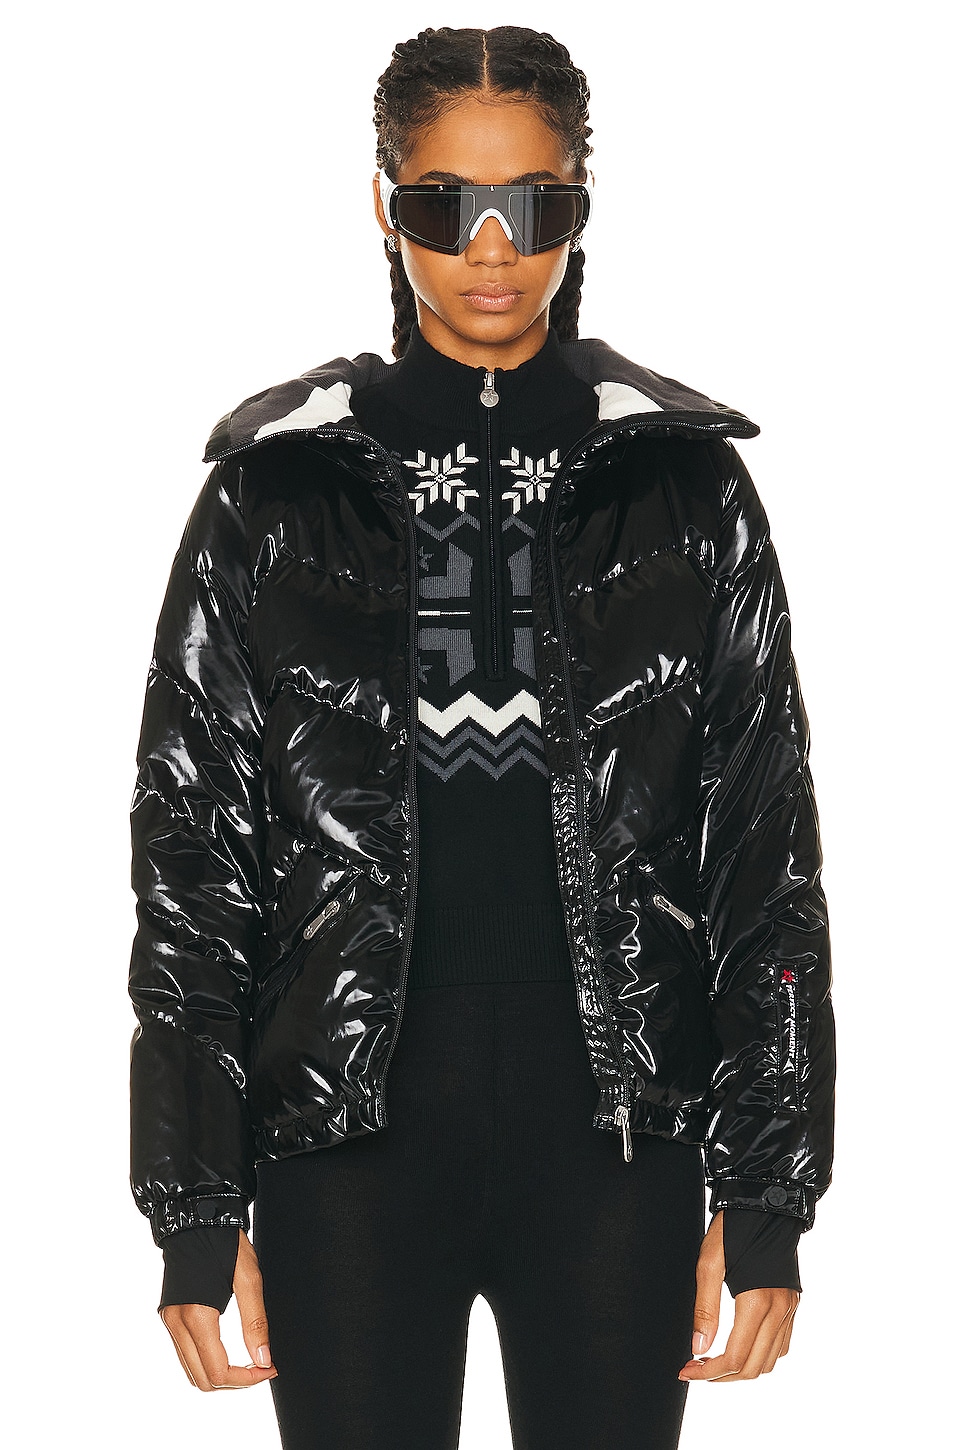 Ski Duvet Jacket in Black